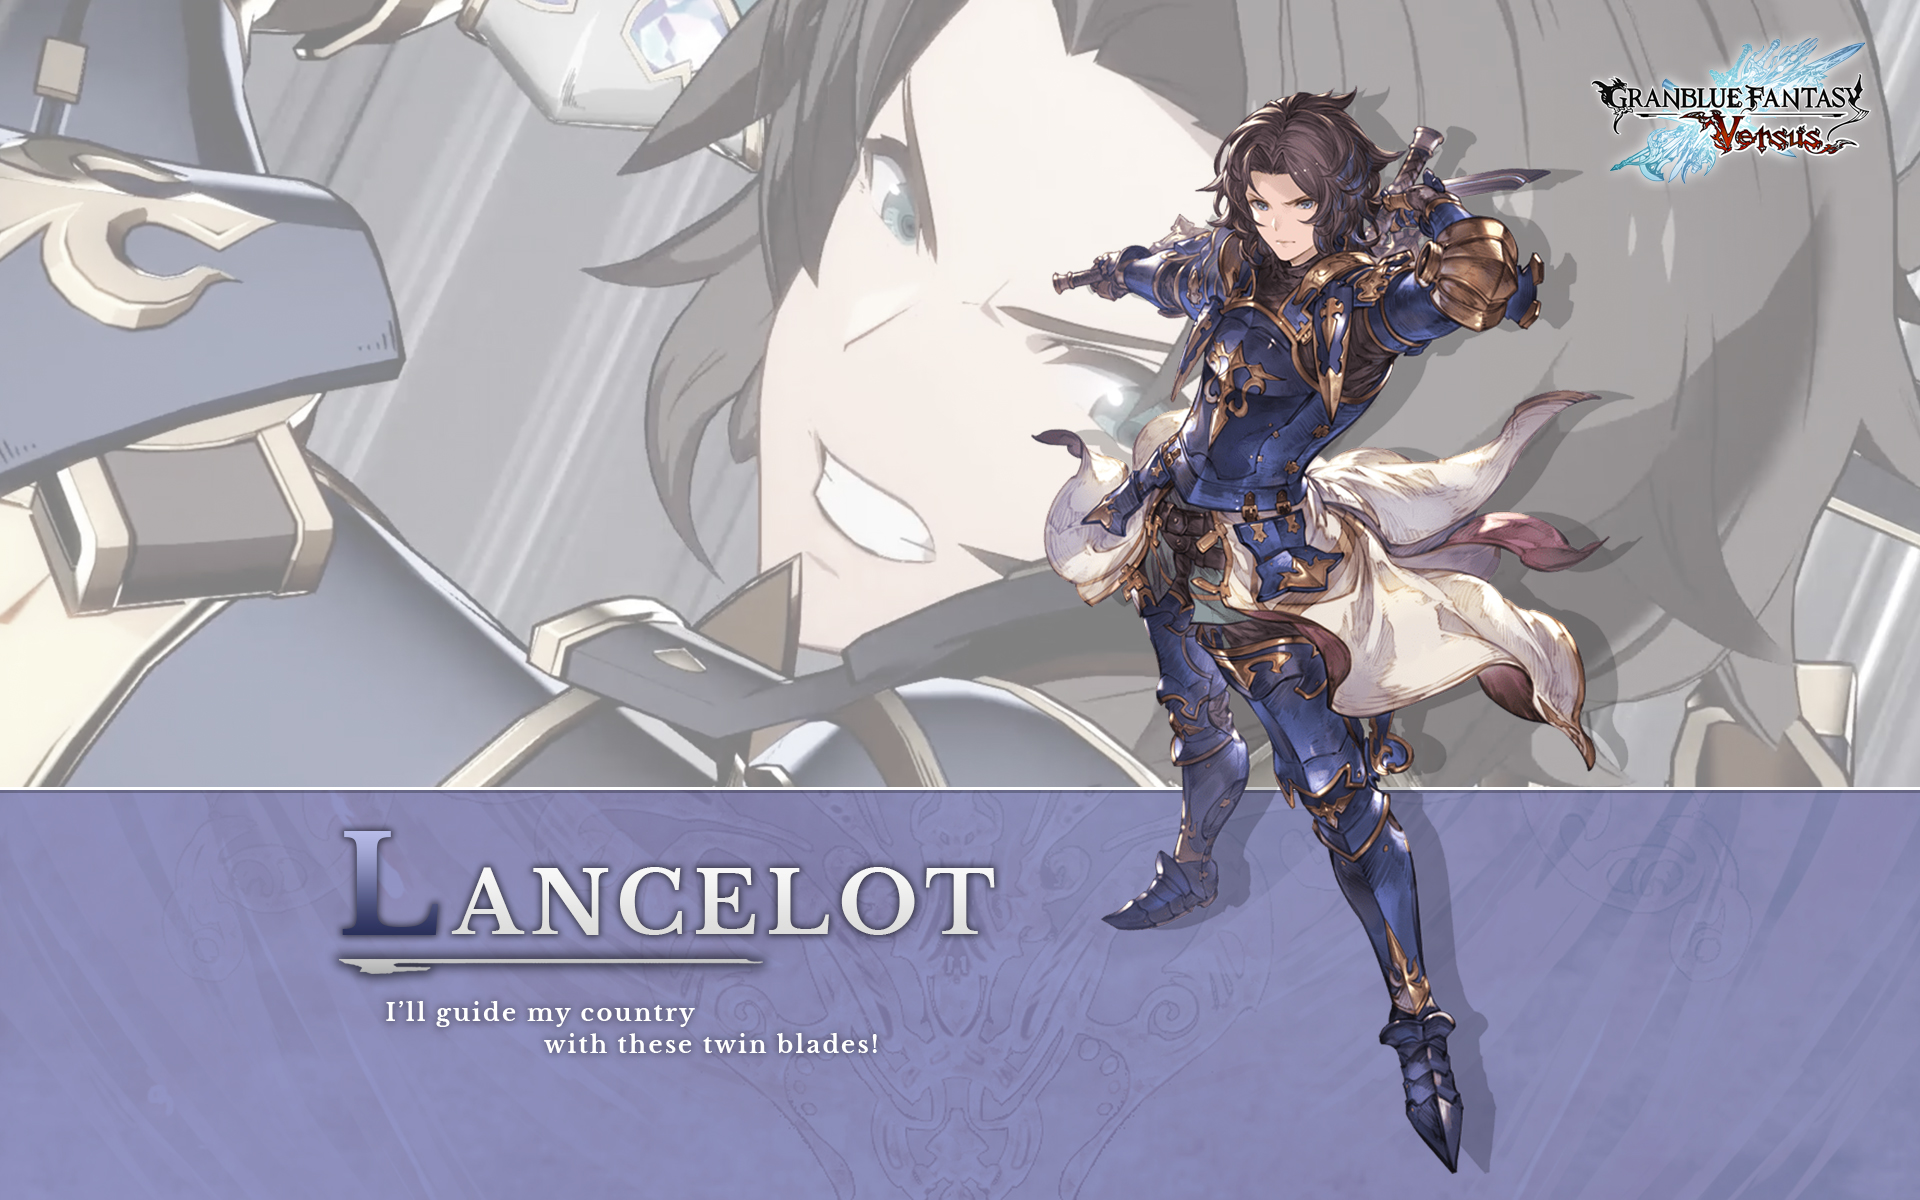 GBVS English Dub Voice: Lancelot Battle Quotes 【Granblue Fantasy Versus】 